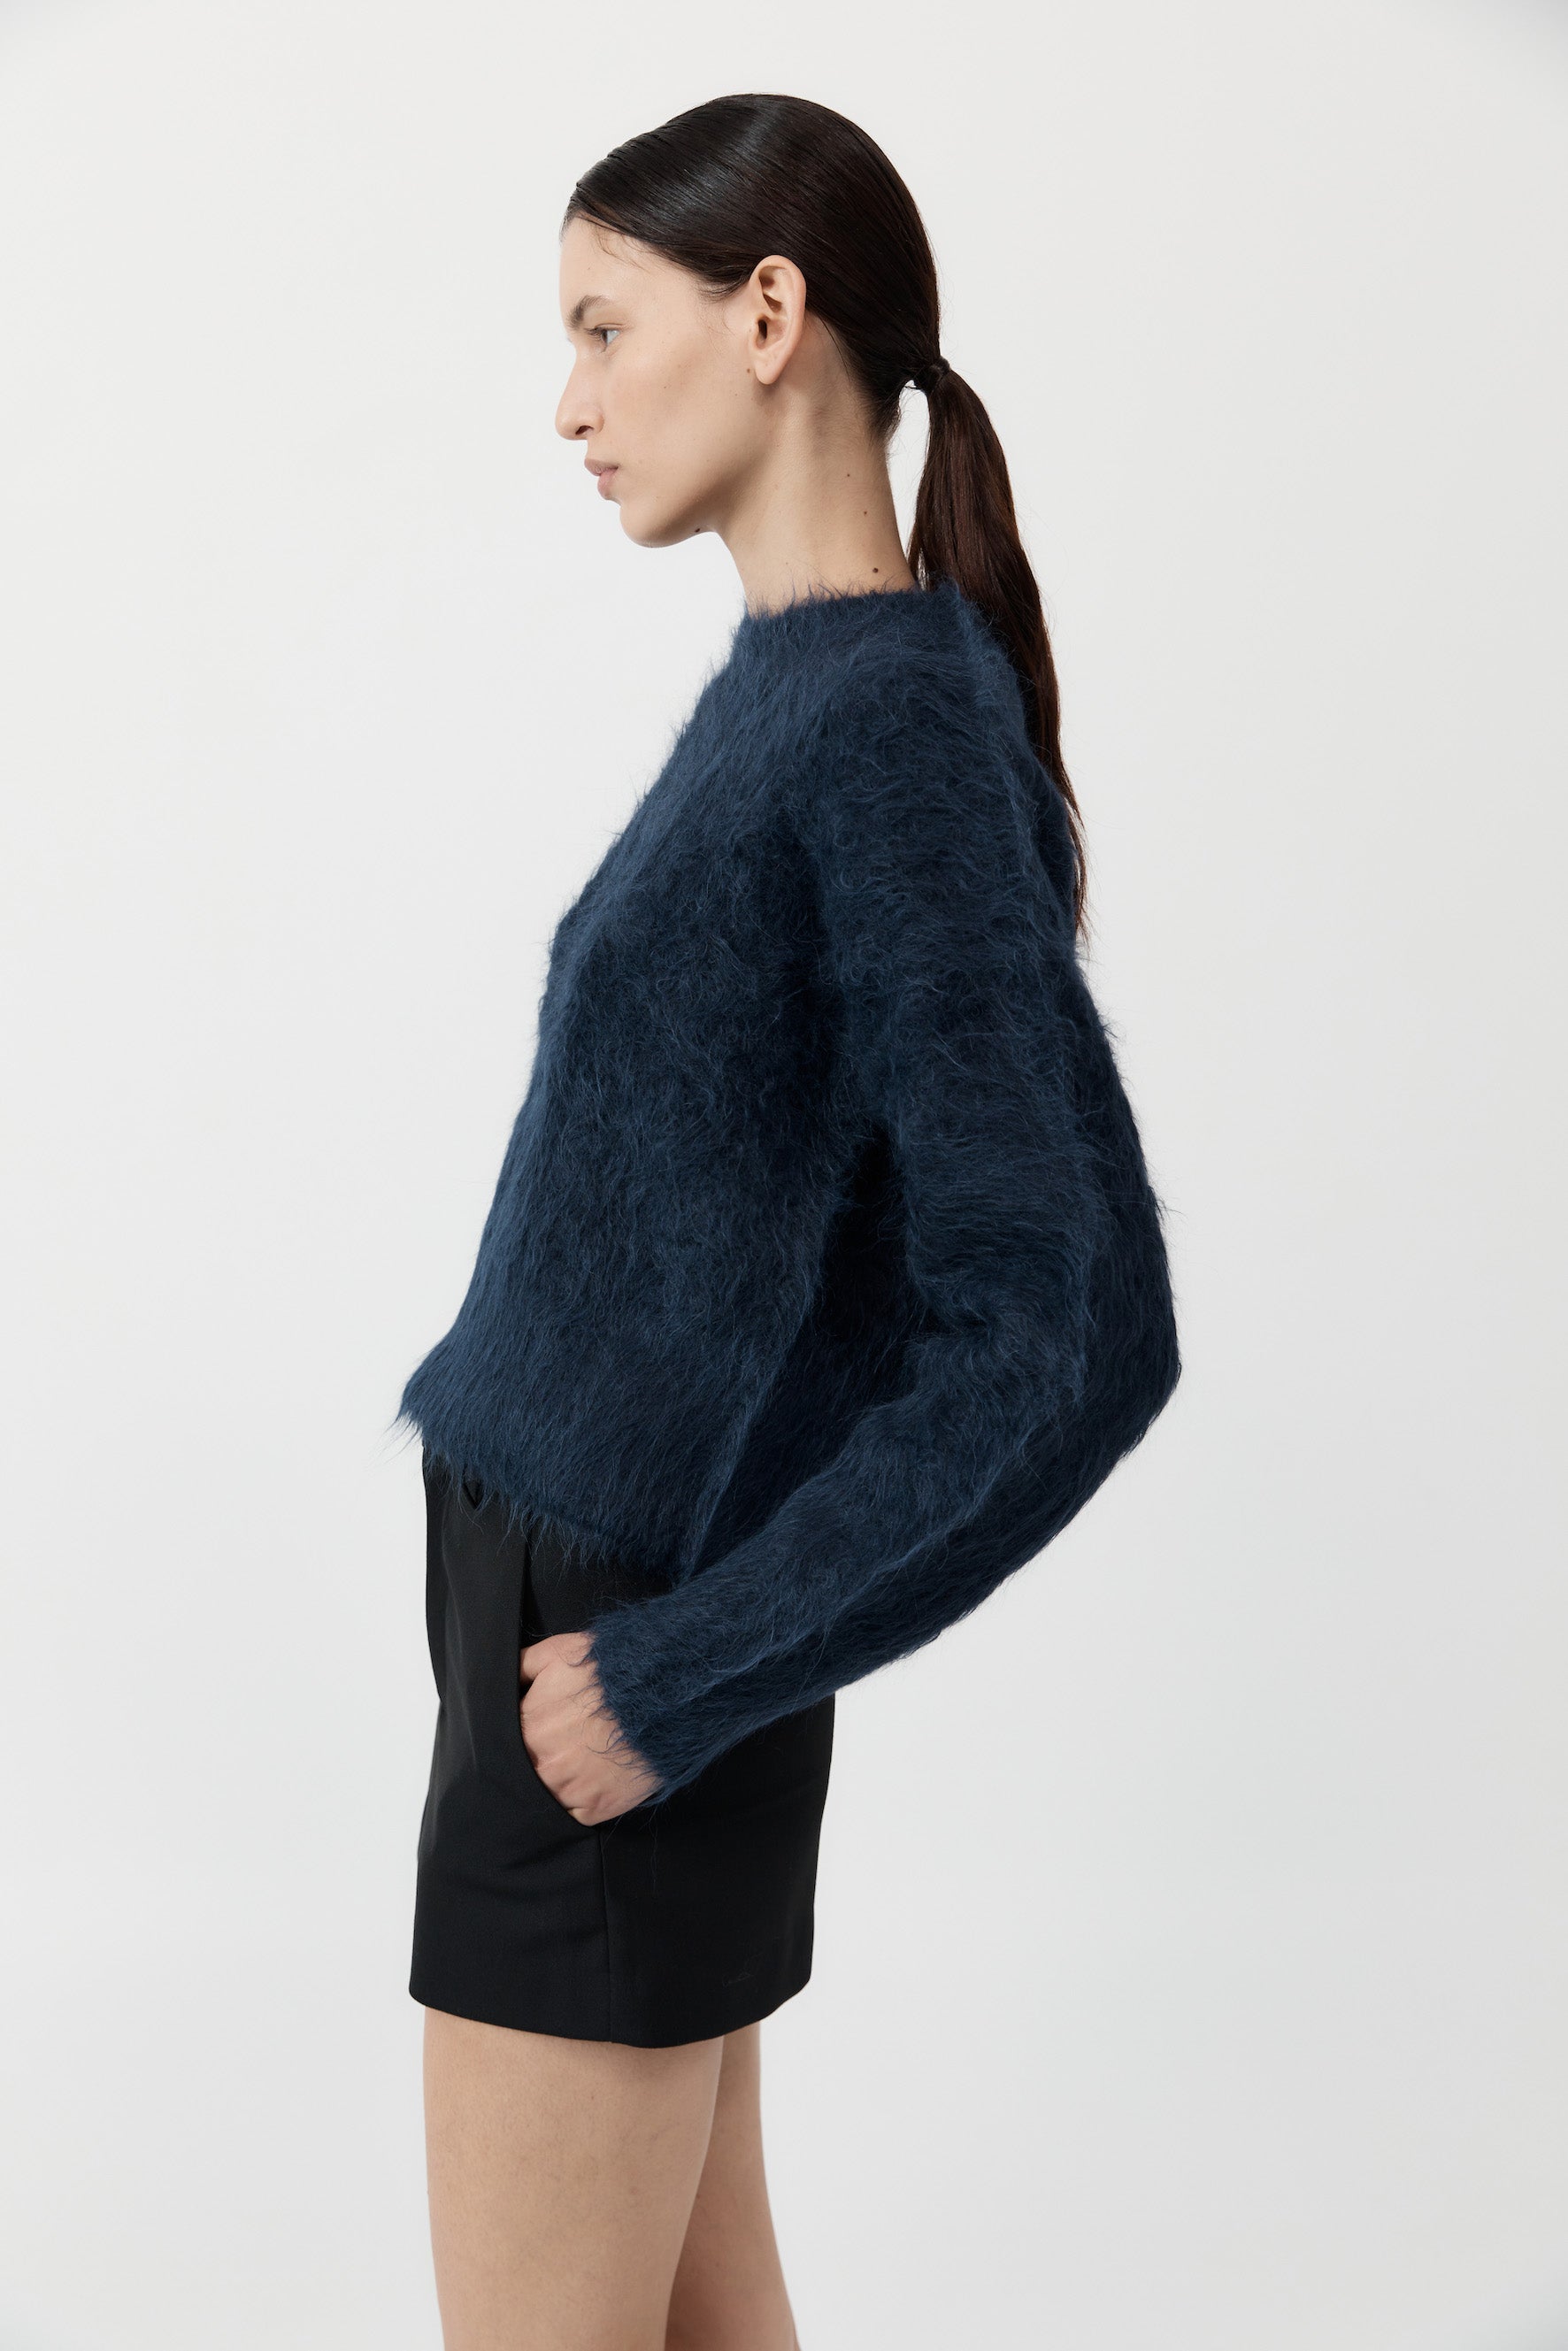 St Agni | Alpaca Sweater - Midnight Blue